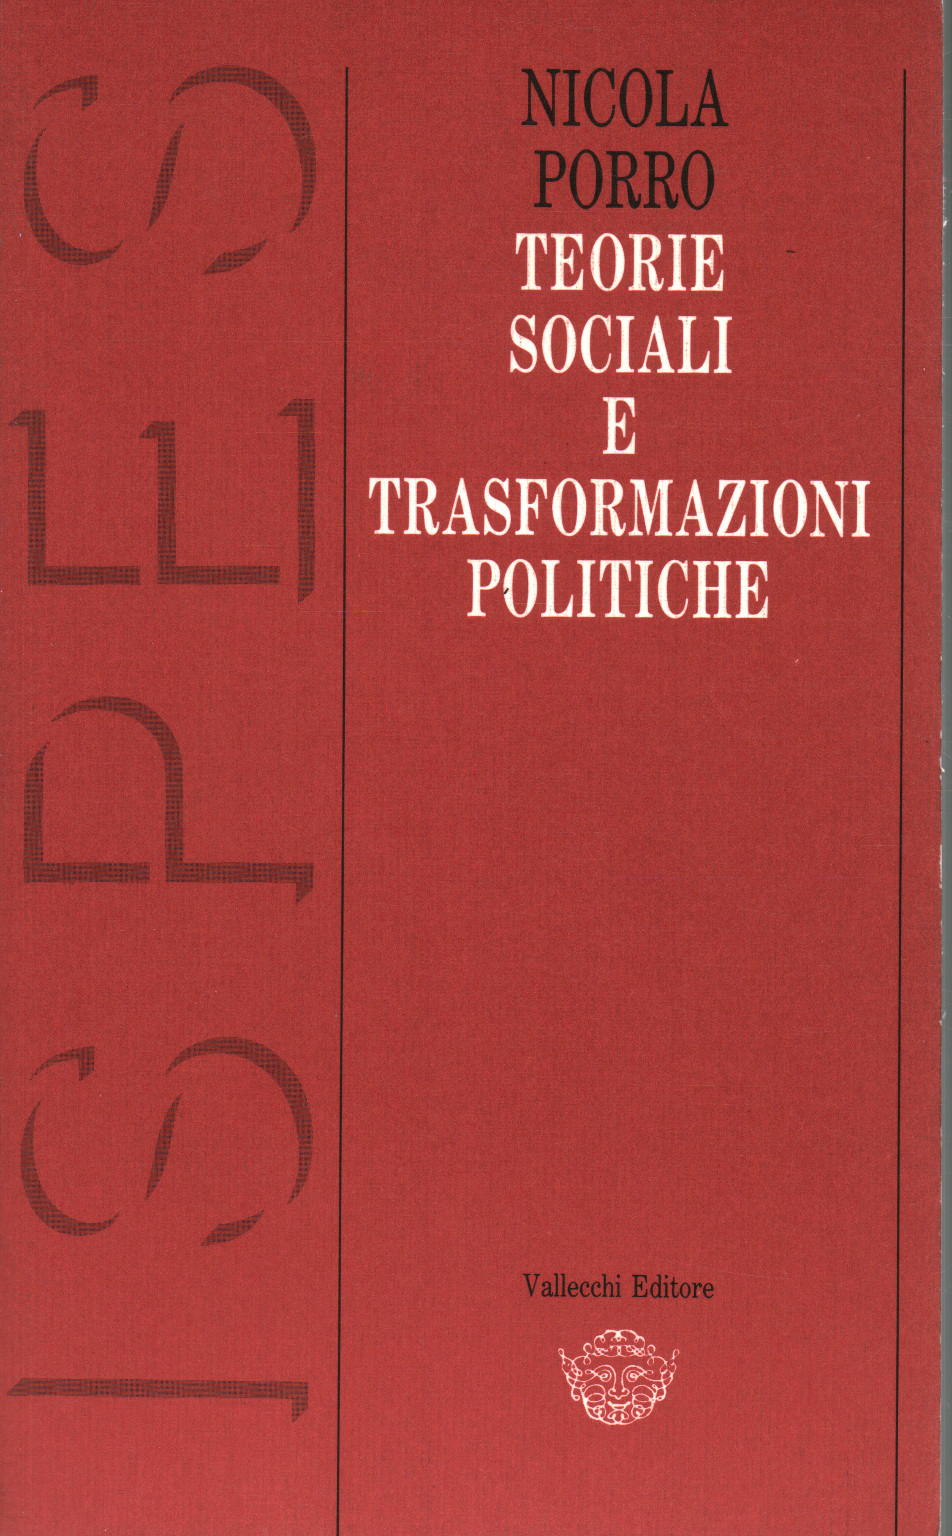 Las teorías de los cambios sociales y políticos, s.una.